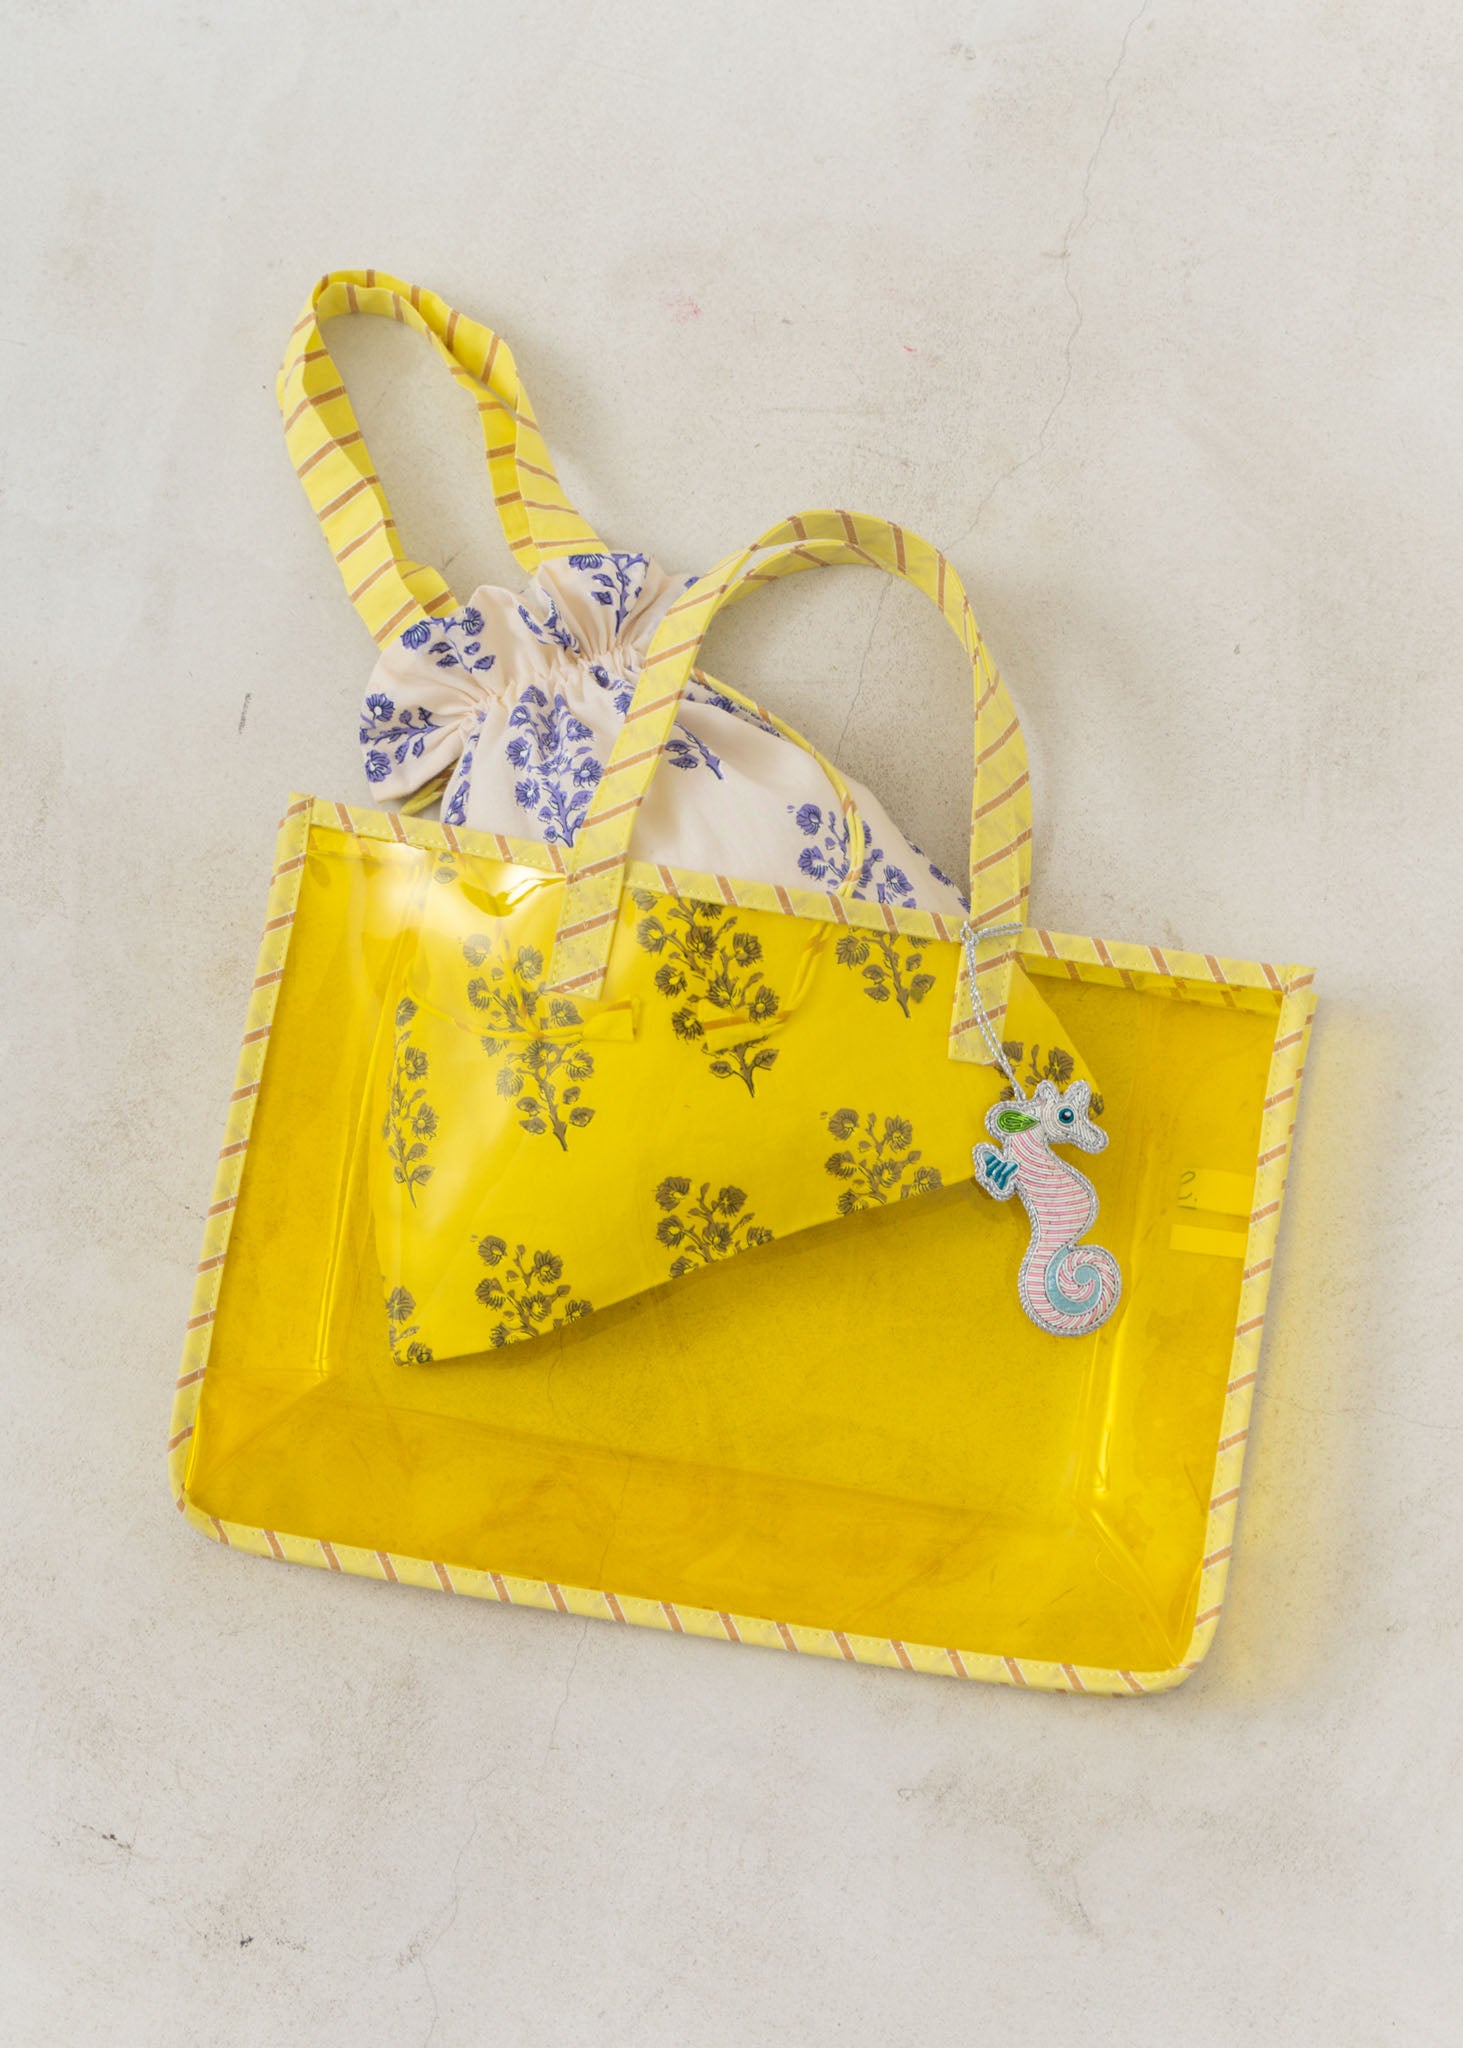 【5/10 10時発売】PVC Tote Bag With Drawstring Bag And Charm